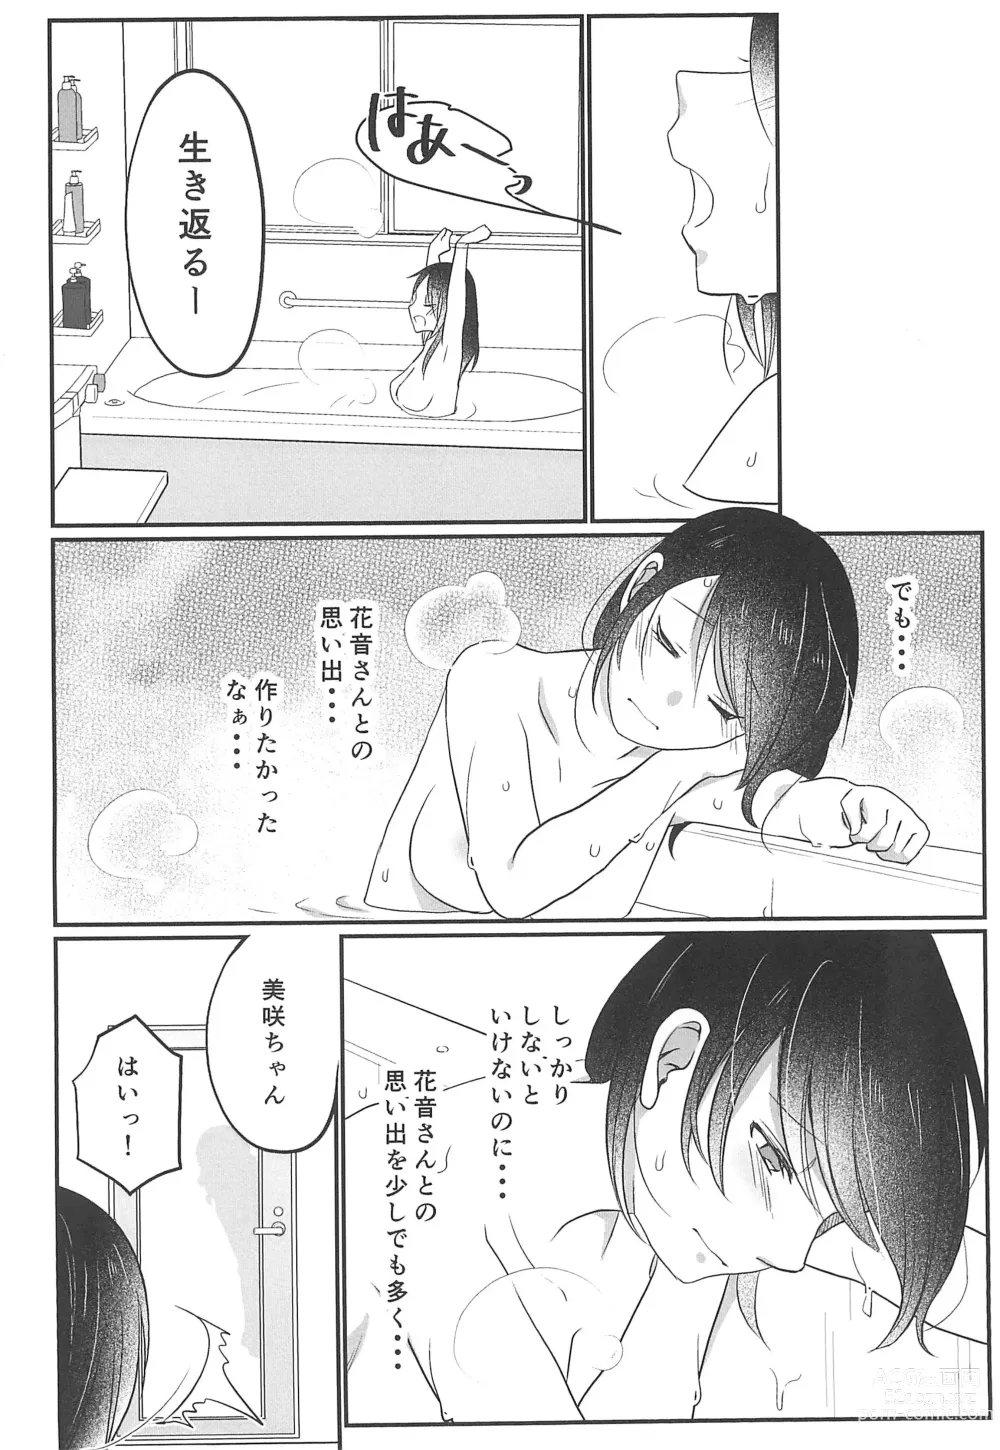 Page 10 of doujinshi Kitto Sonna Natsu no Hi no Omoide